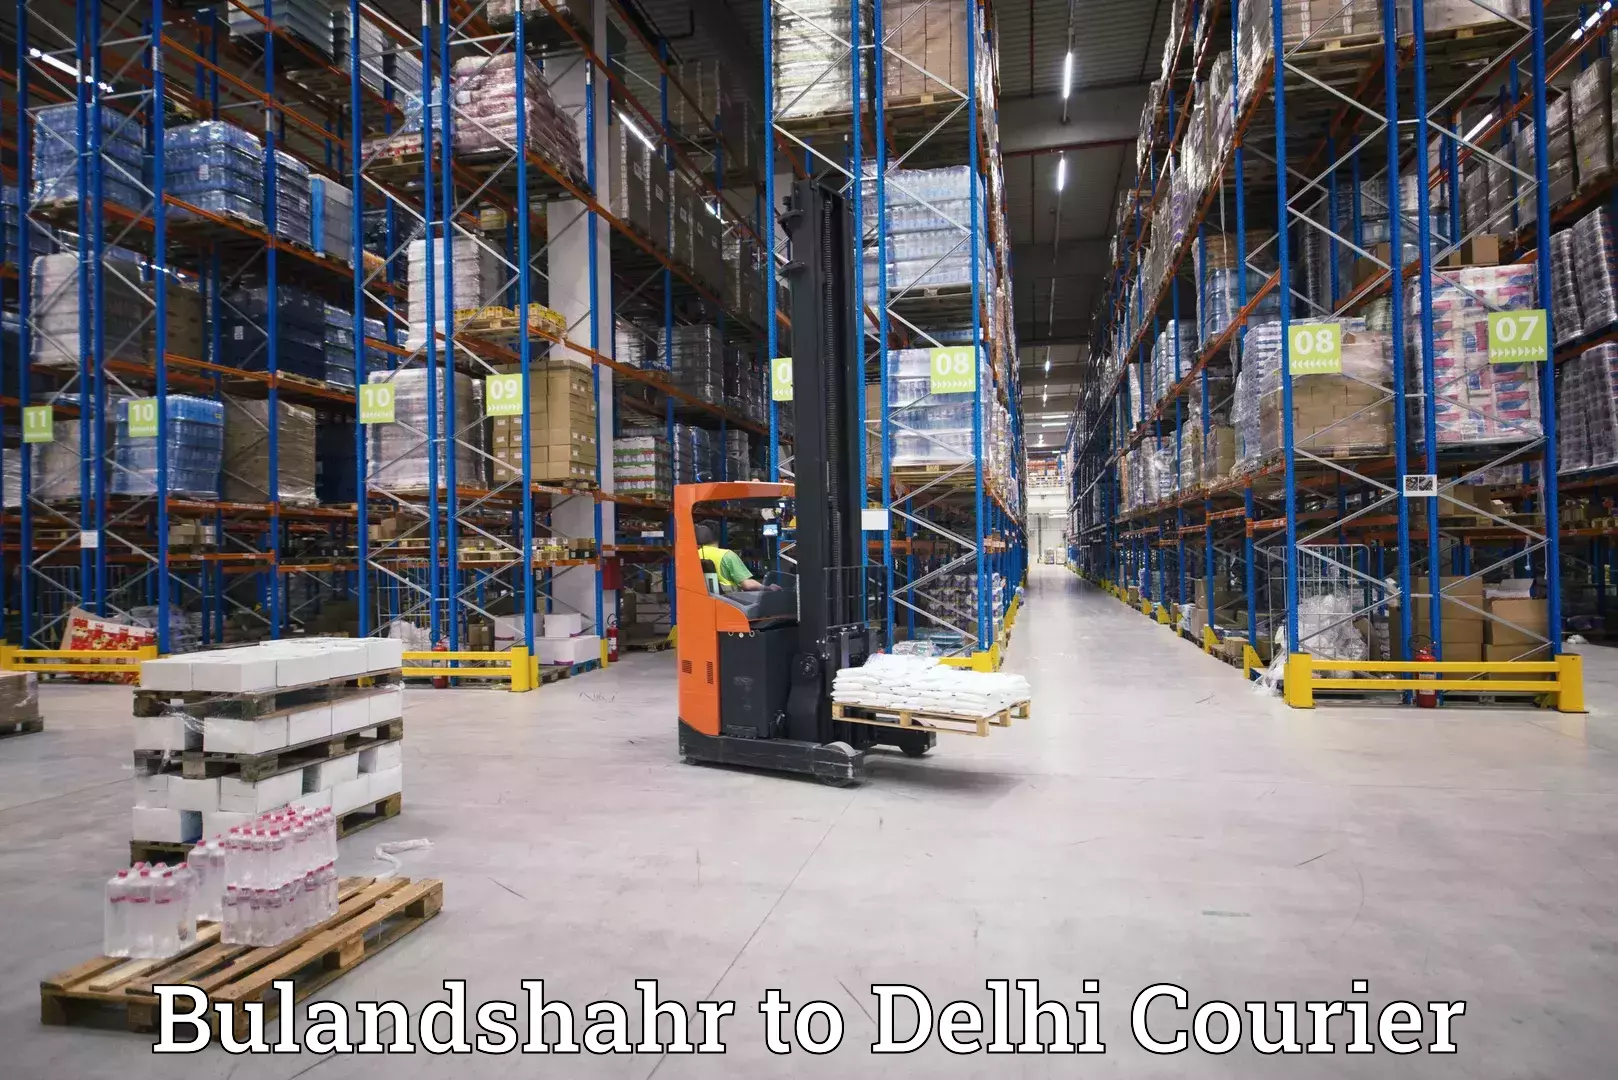 Express logistics service Bulandshahr to IIT Delhi